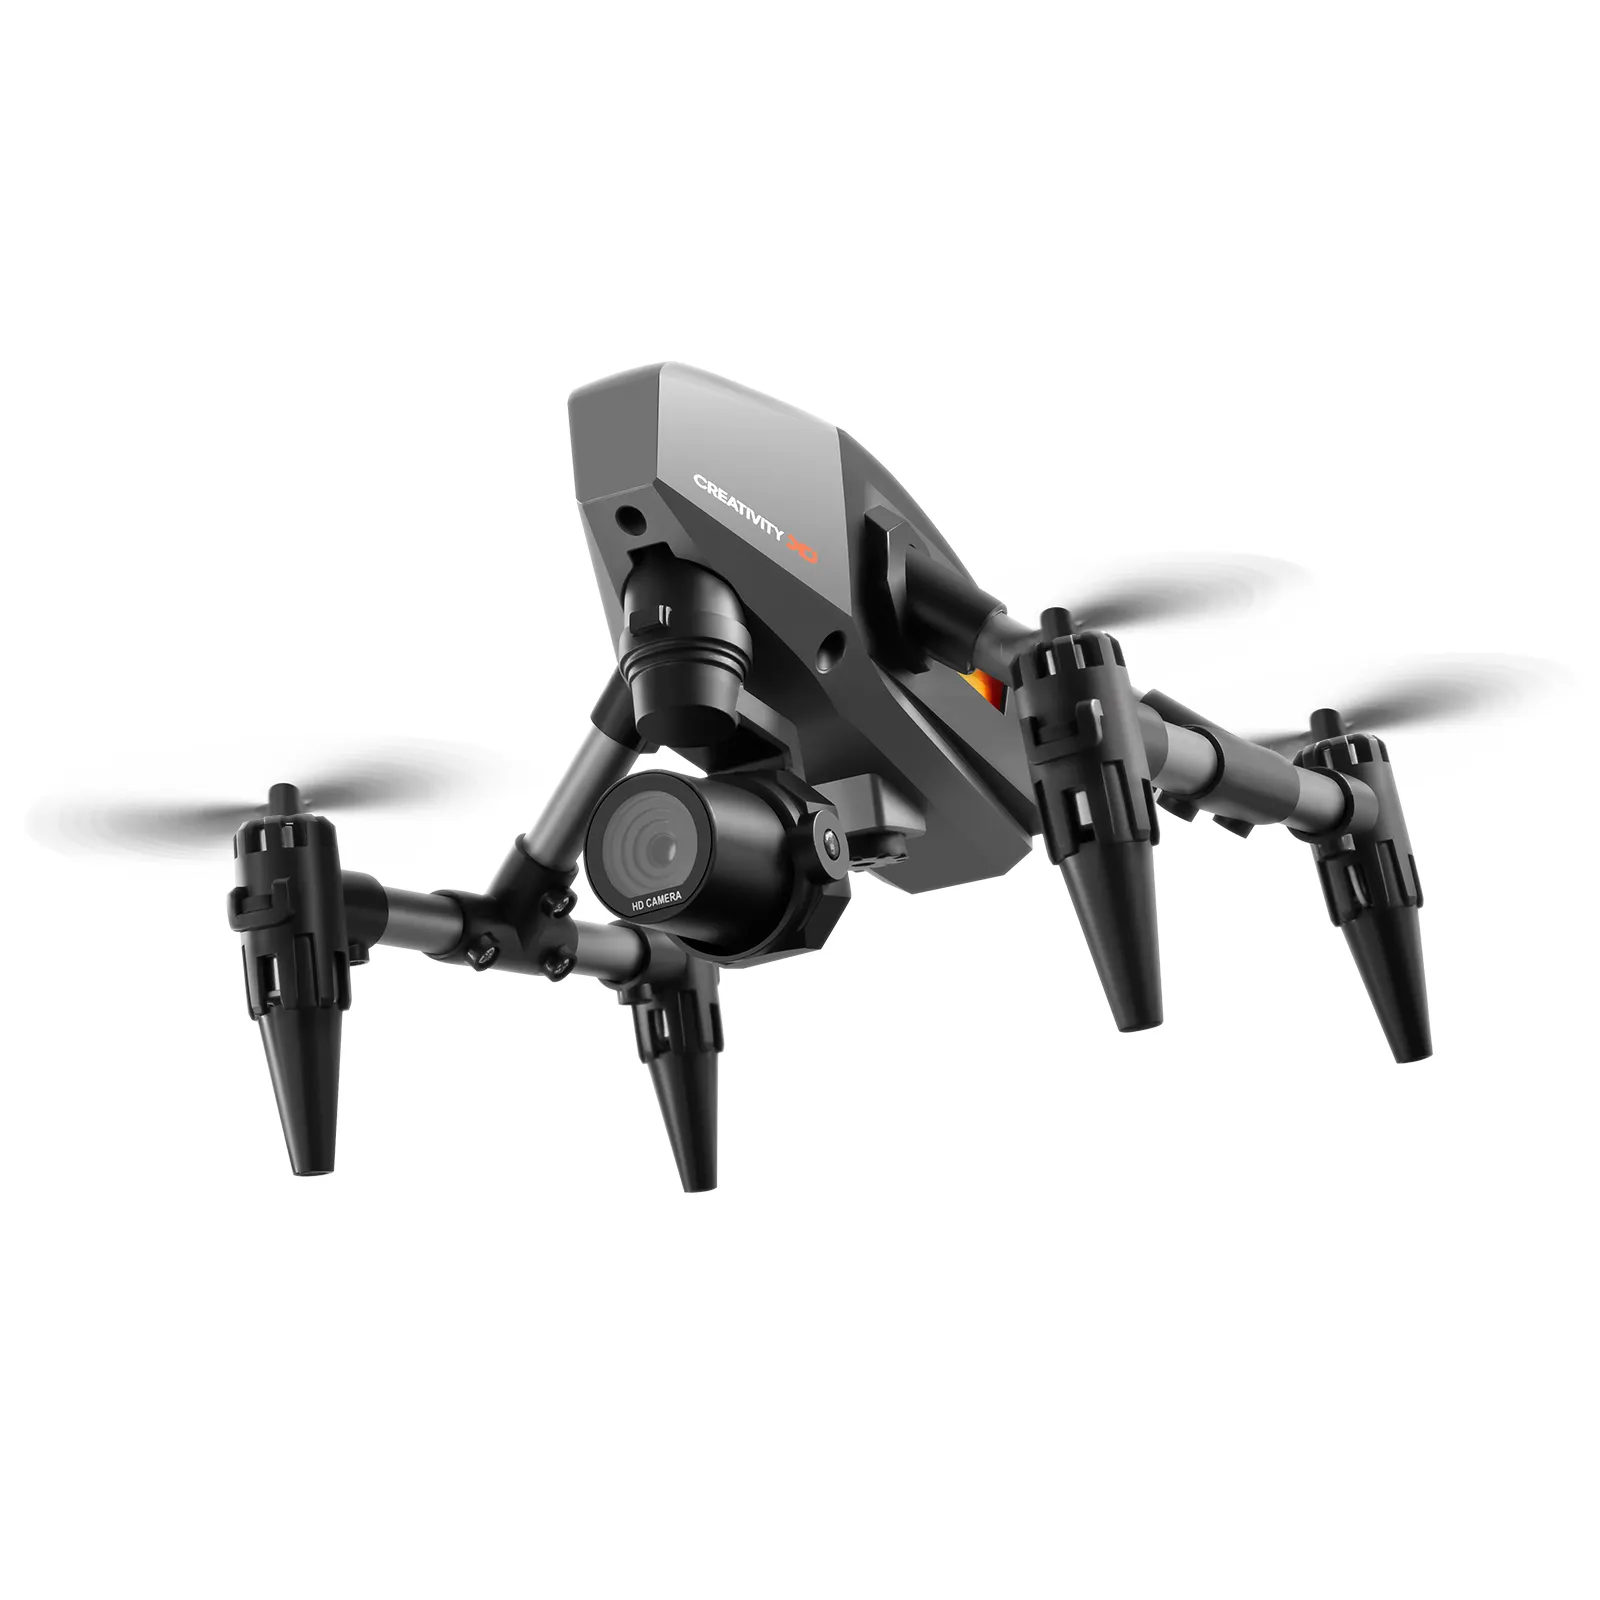 2023 nouveau XD1 Mini Drone avec caméra 4K RC hélicoptère détection de geste avec ESC Dron RC avion Quadrocopter télécommande jouet cadeau